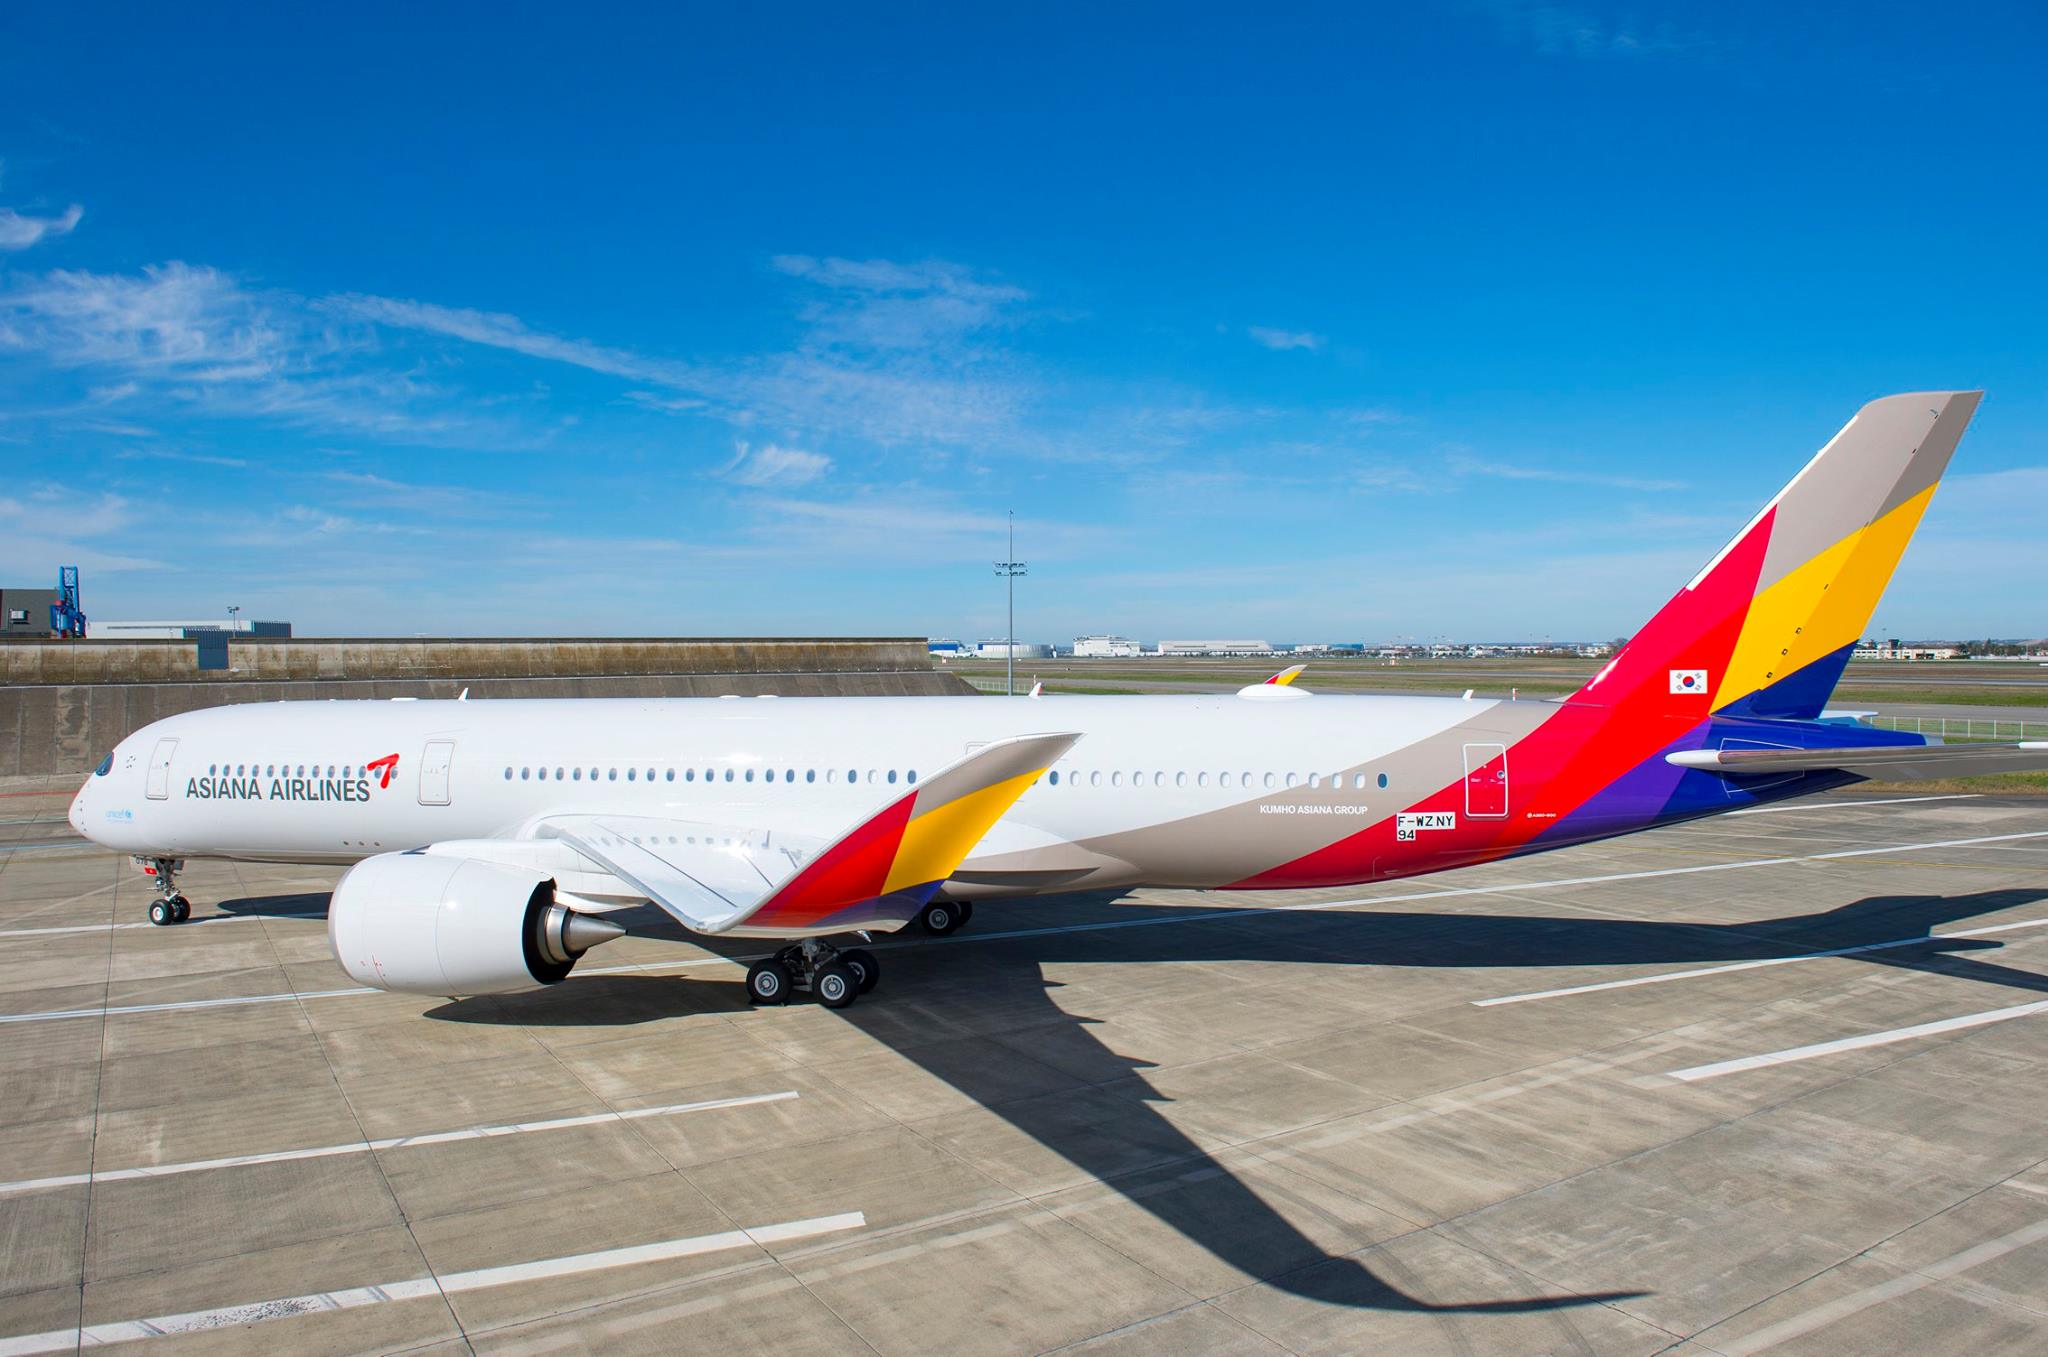 Korean Air Flies A380 To Atlanta 1 September | SUPERADRIANME.com